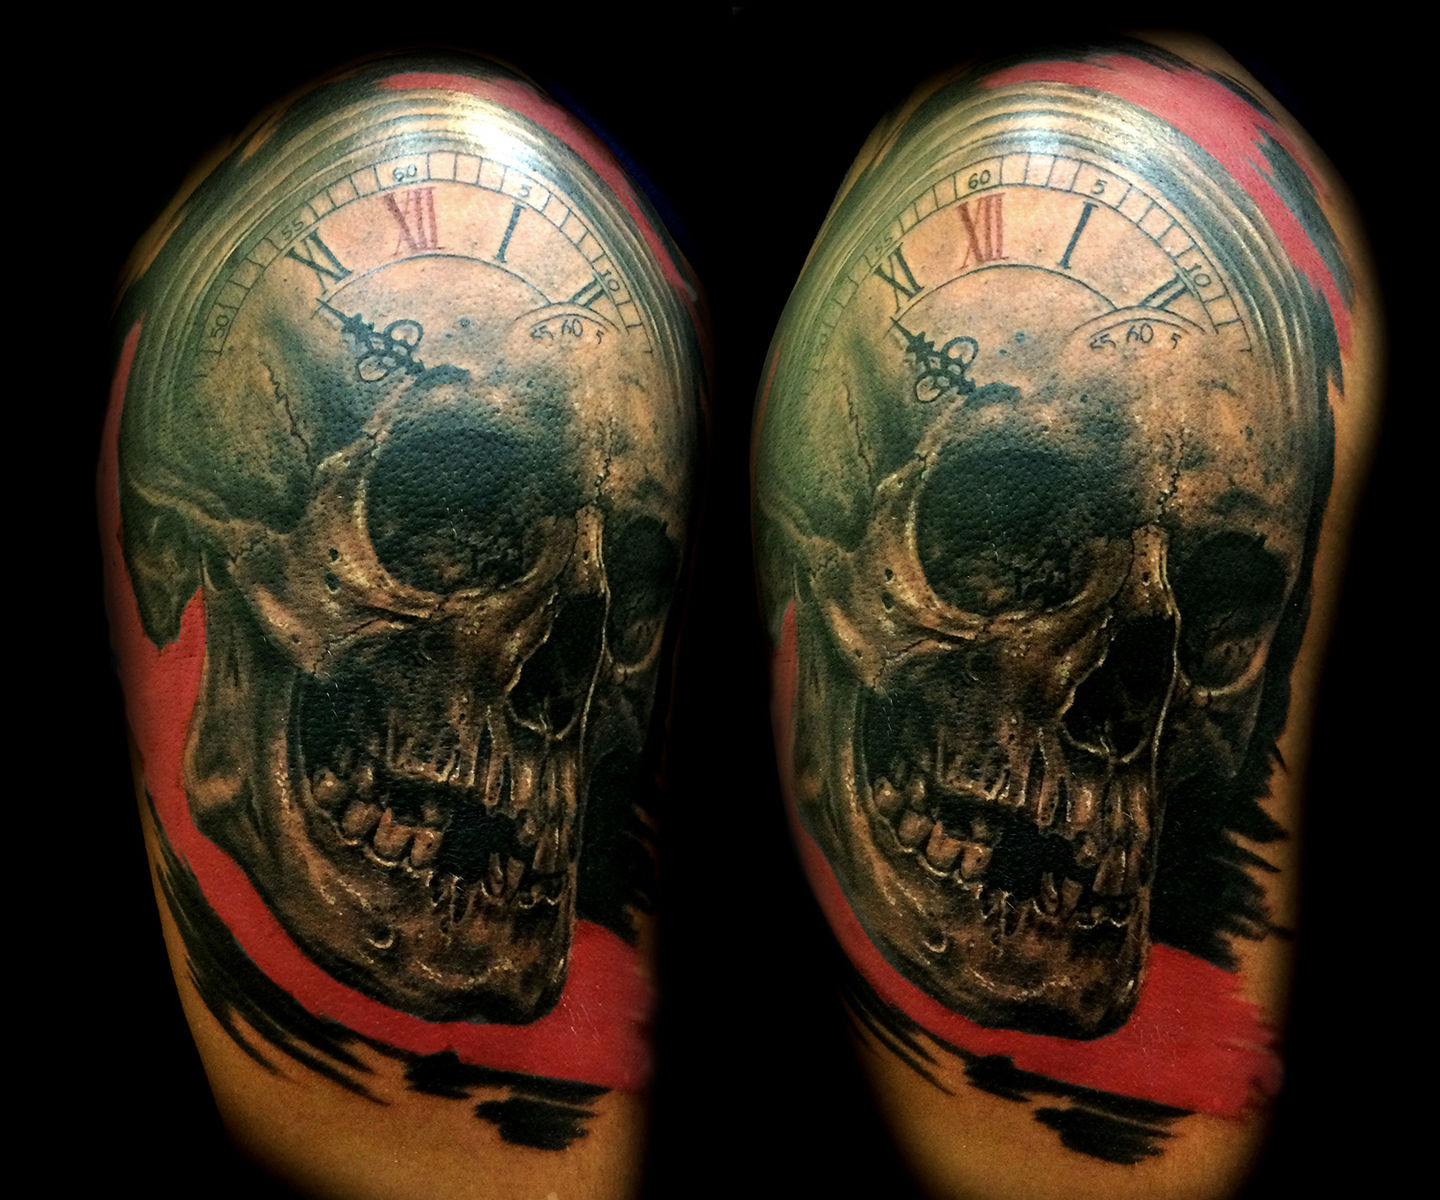 skull clock tattoo